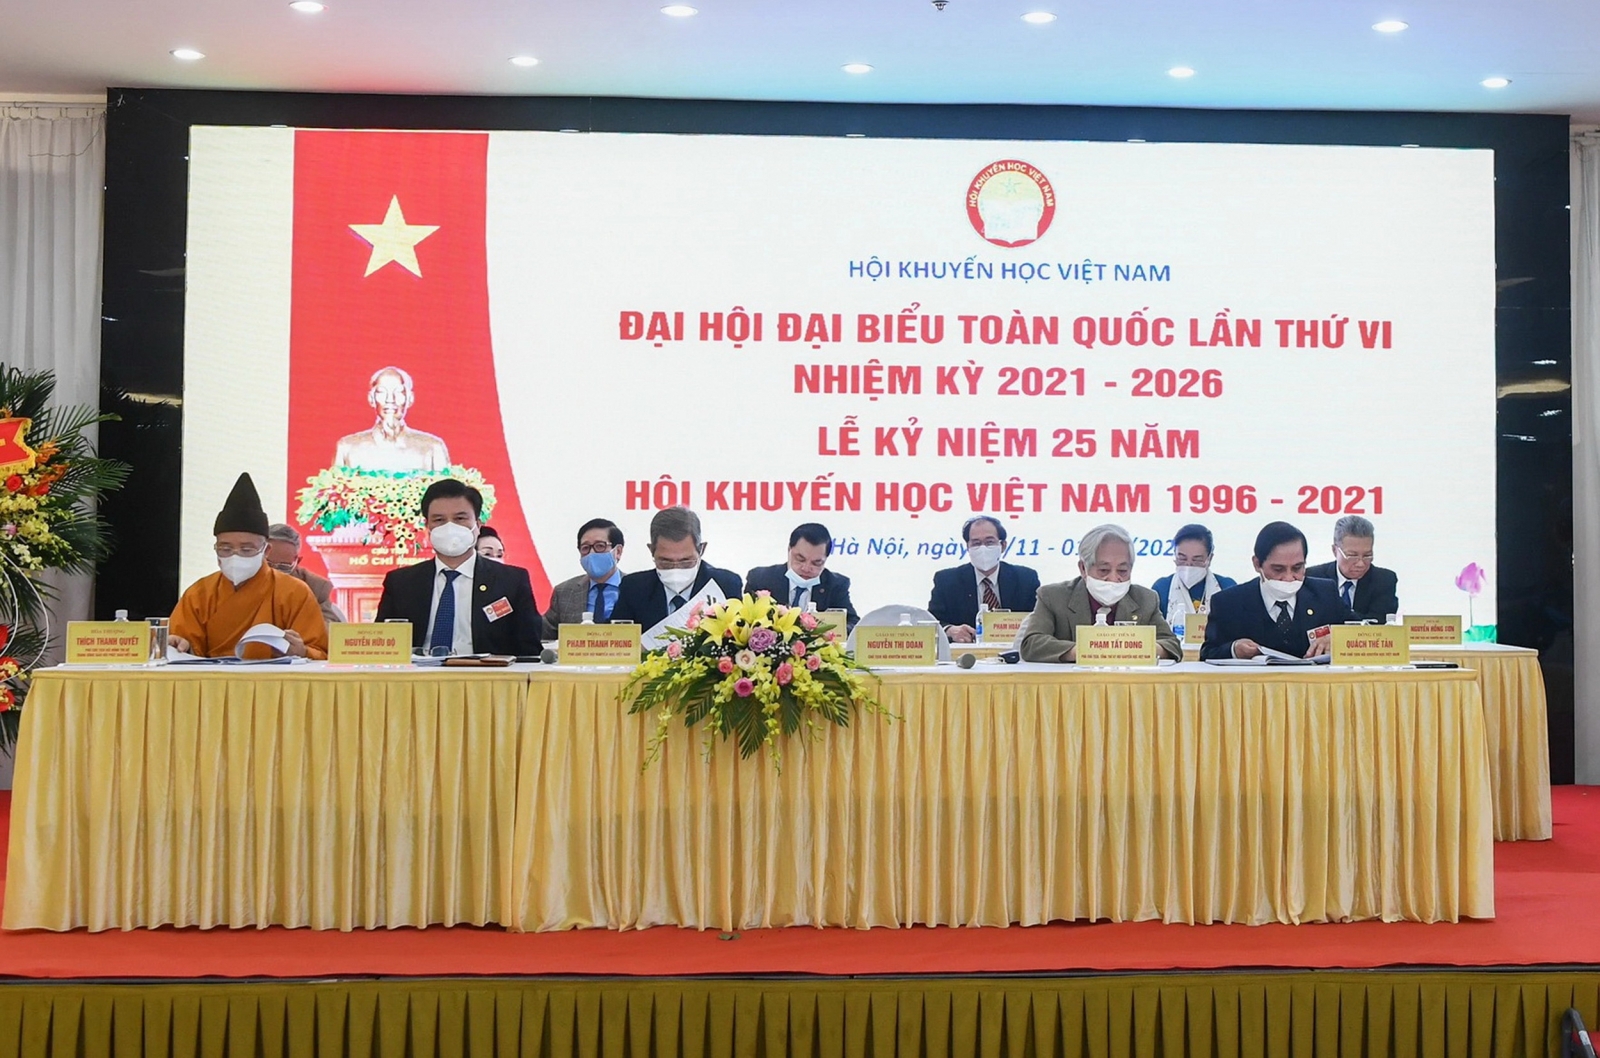 Hội Khuyến học Việt Nam đã trở thành một lực lượng xã hội lớn mạnh